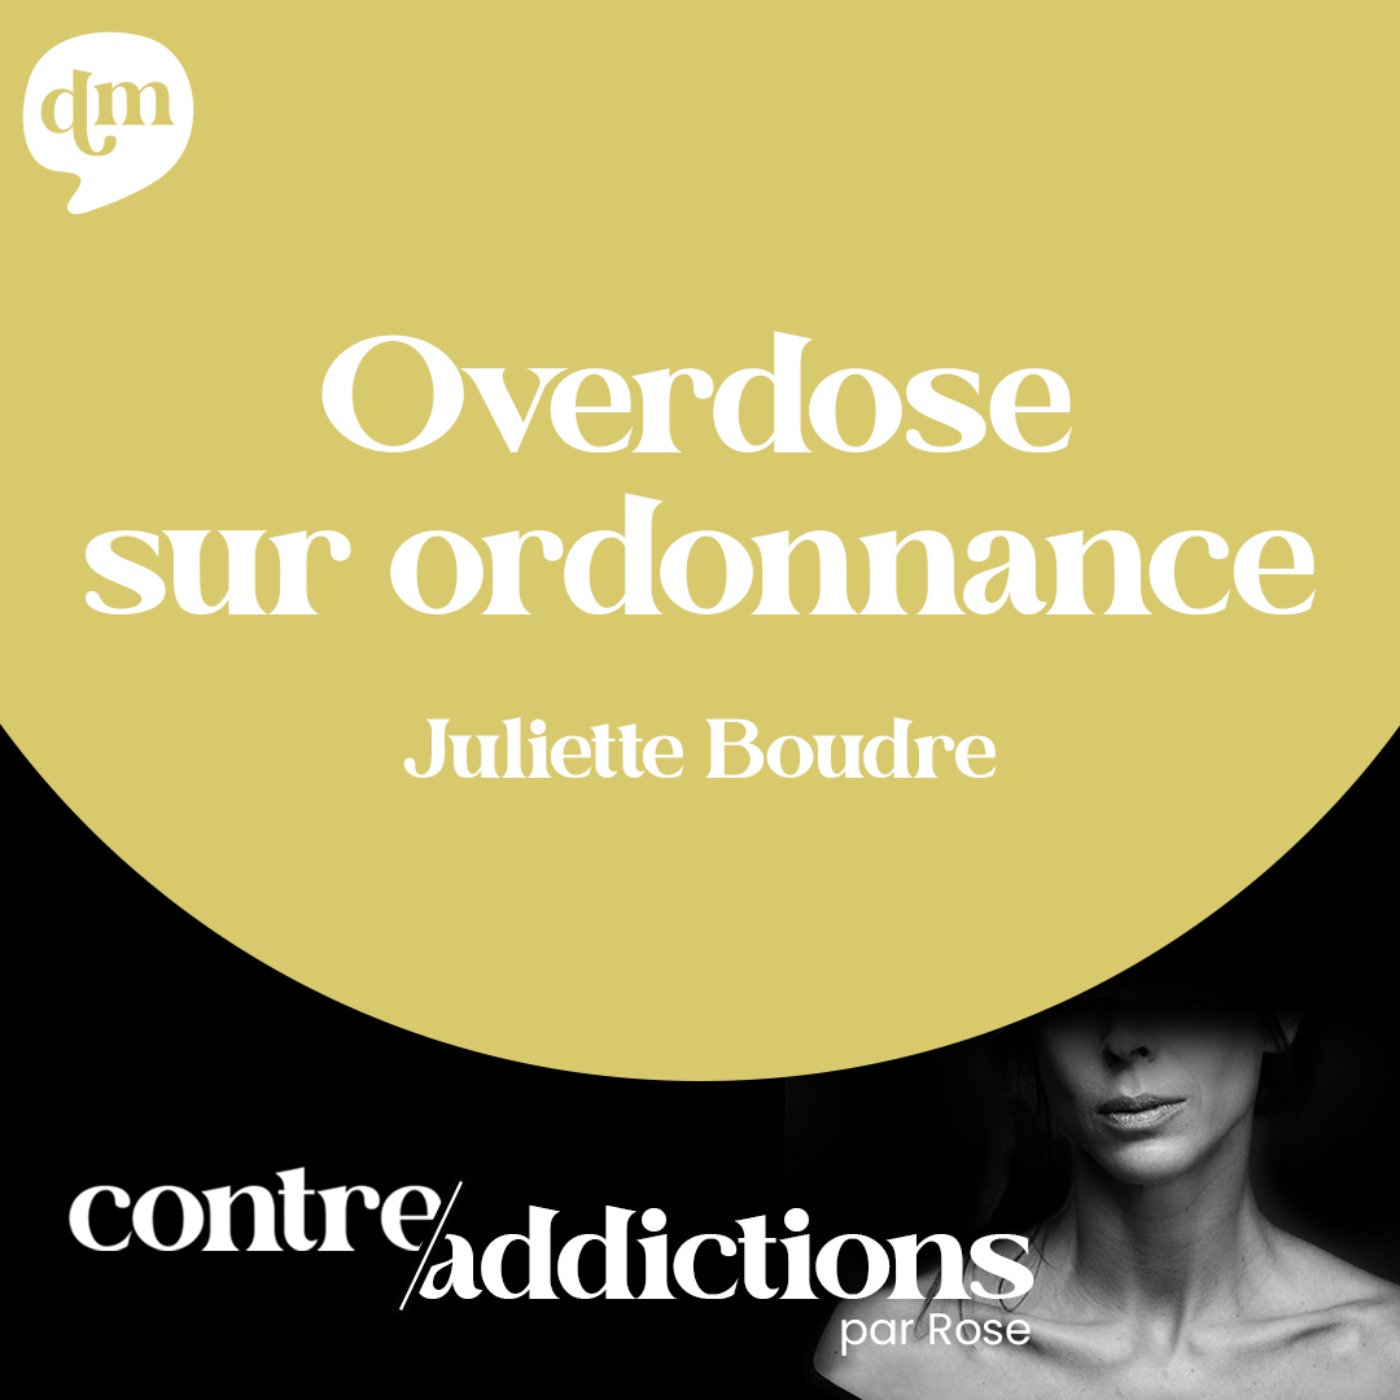 Overdose sur ordonnance - Juliette Boudre